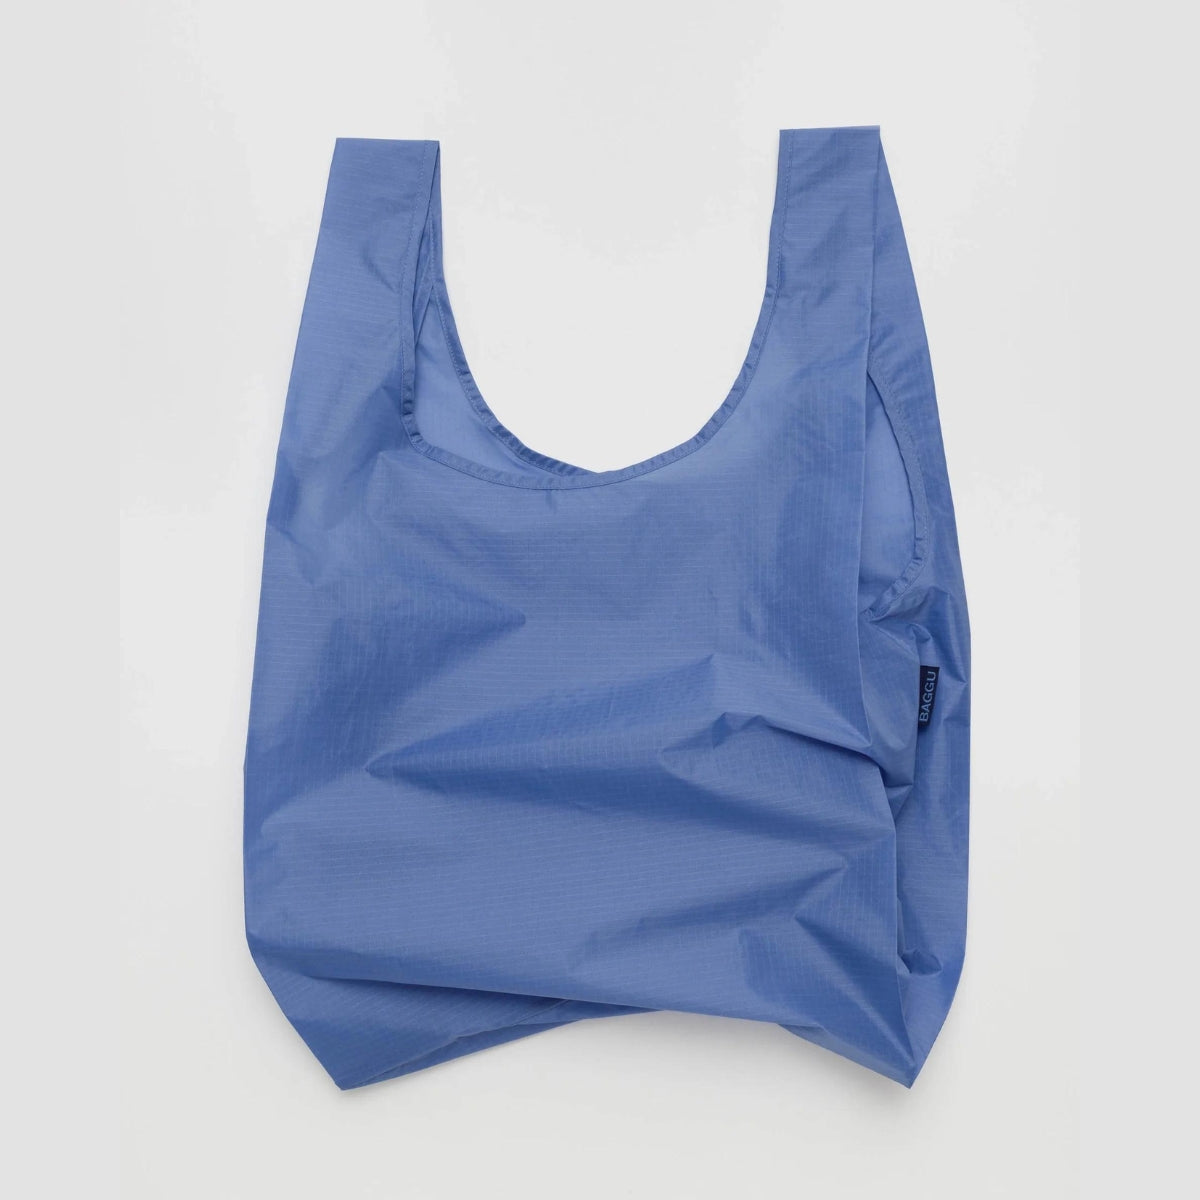 Baggu Standard Bag in Pansy Blue